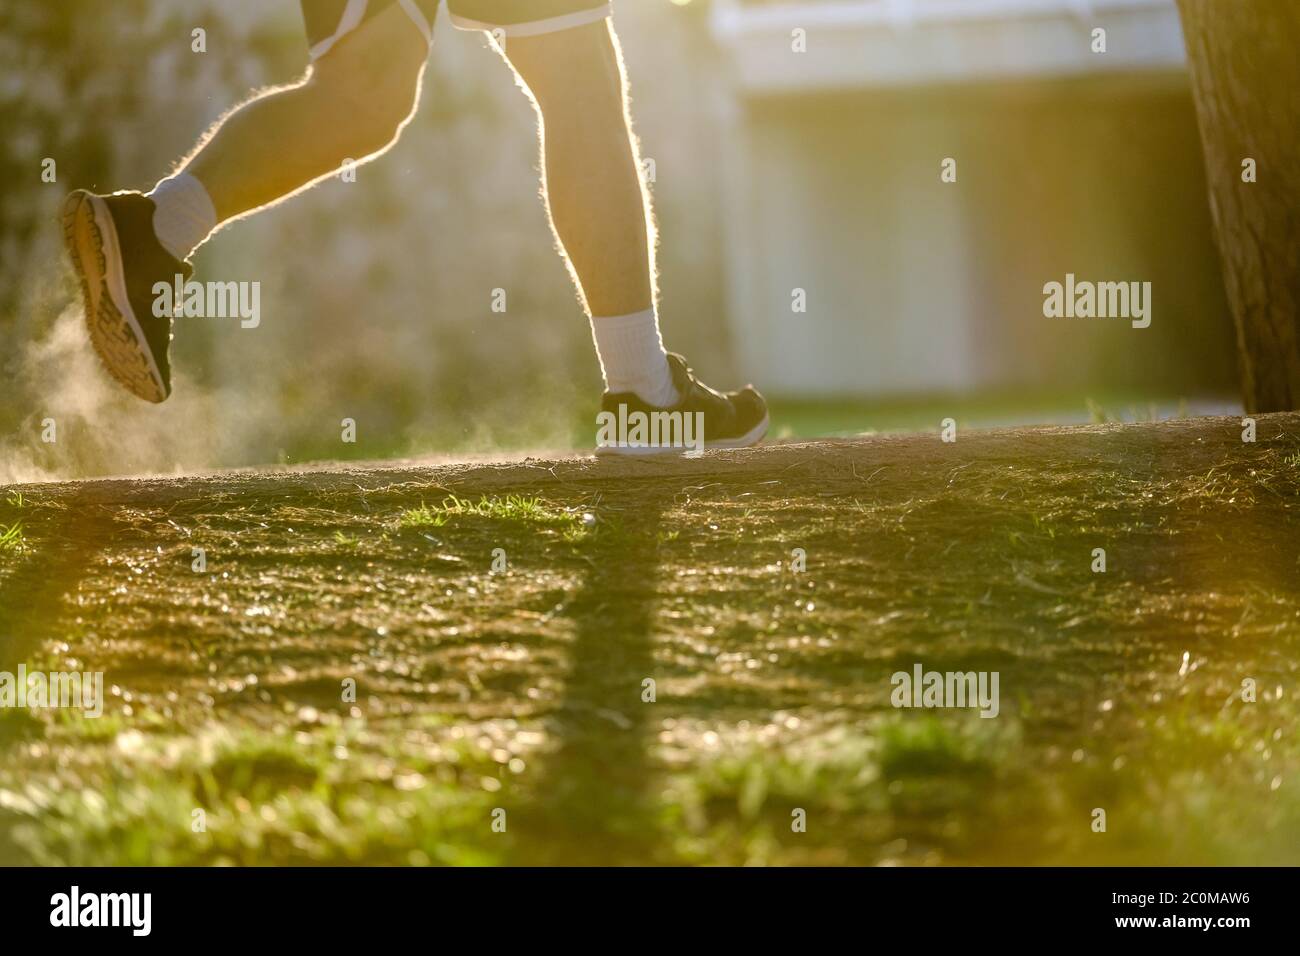 encorvé el polvo mientras corres, la luz de fondo borrosa movimiento imagenpráctica de la aptitud deportiva y el concepto de estilo de vida saludable Foto de stock